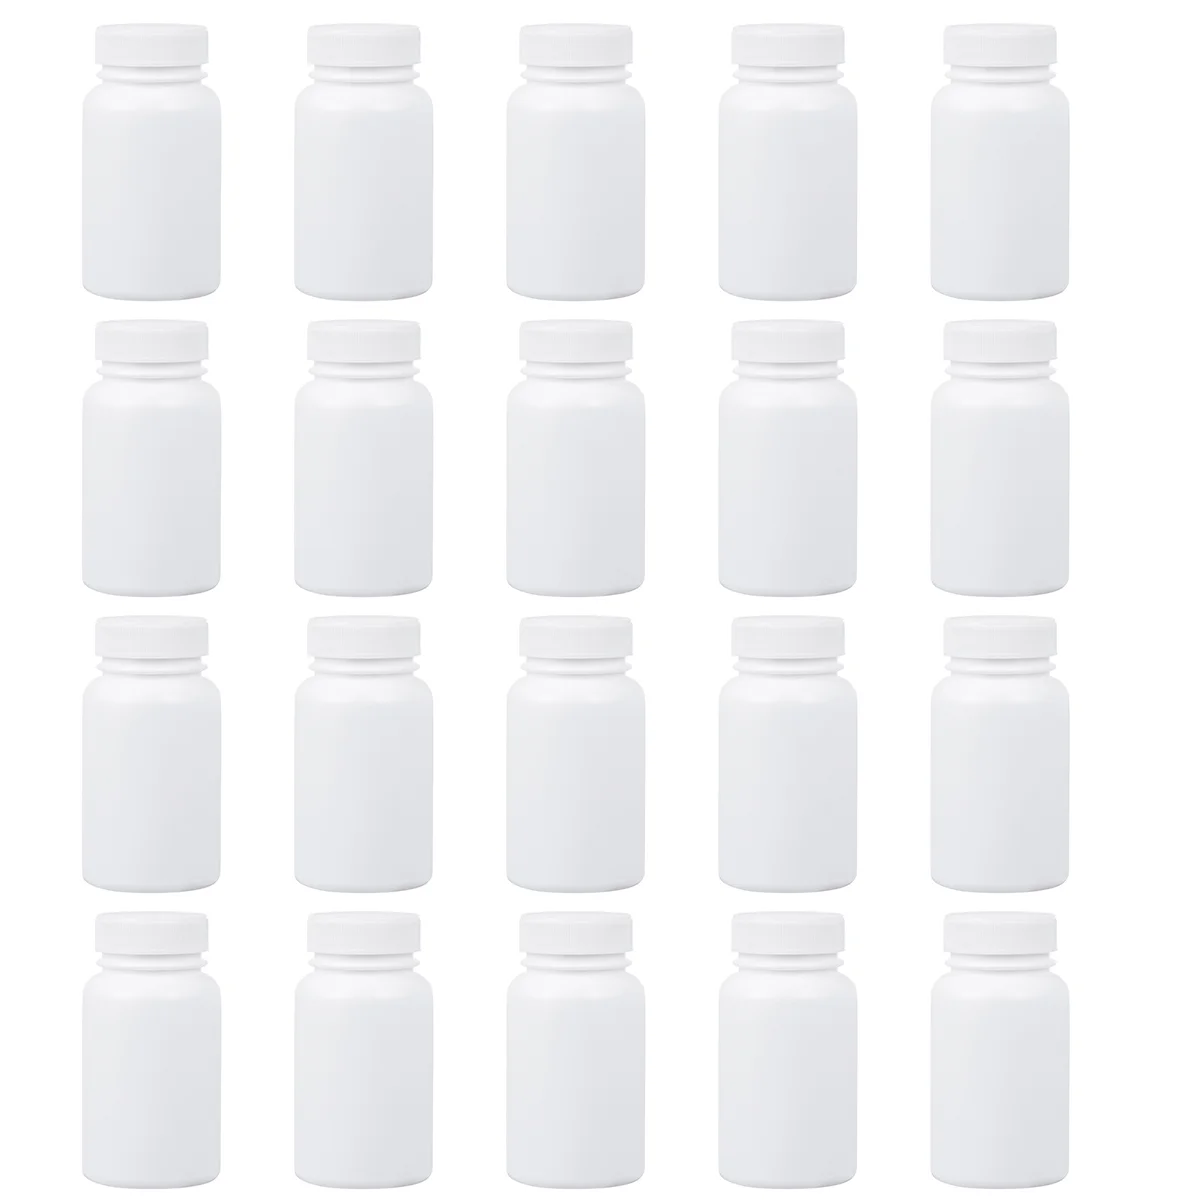 

Empty Pill Bottle Plastic Medicine Bottle 20Pcs Portable Tablet Container Case Reagent Bottle Caps Capsules Storage